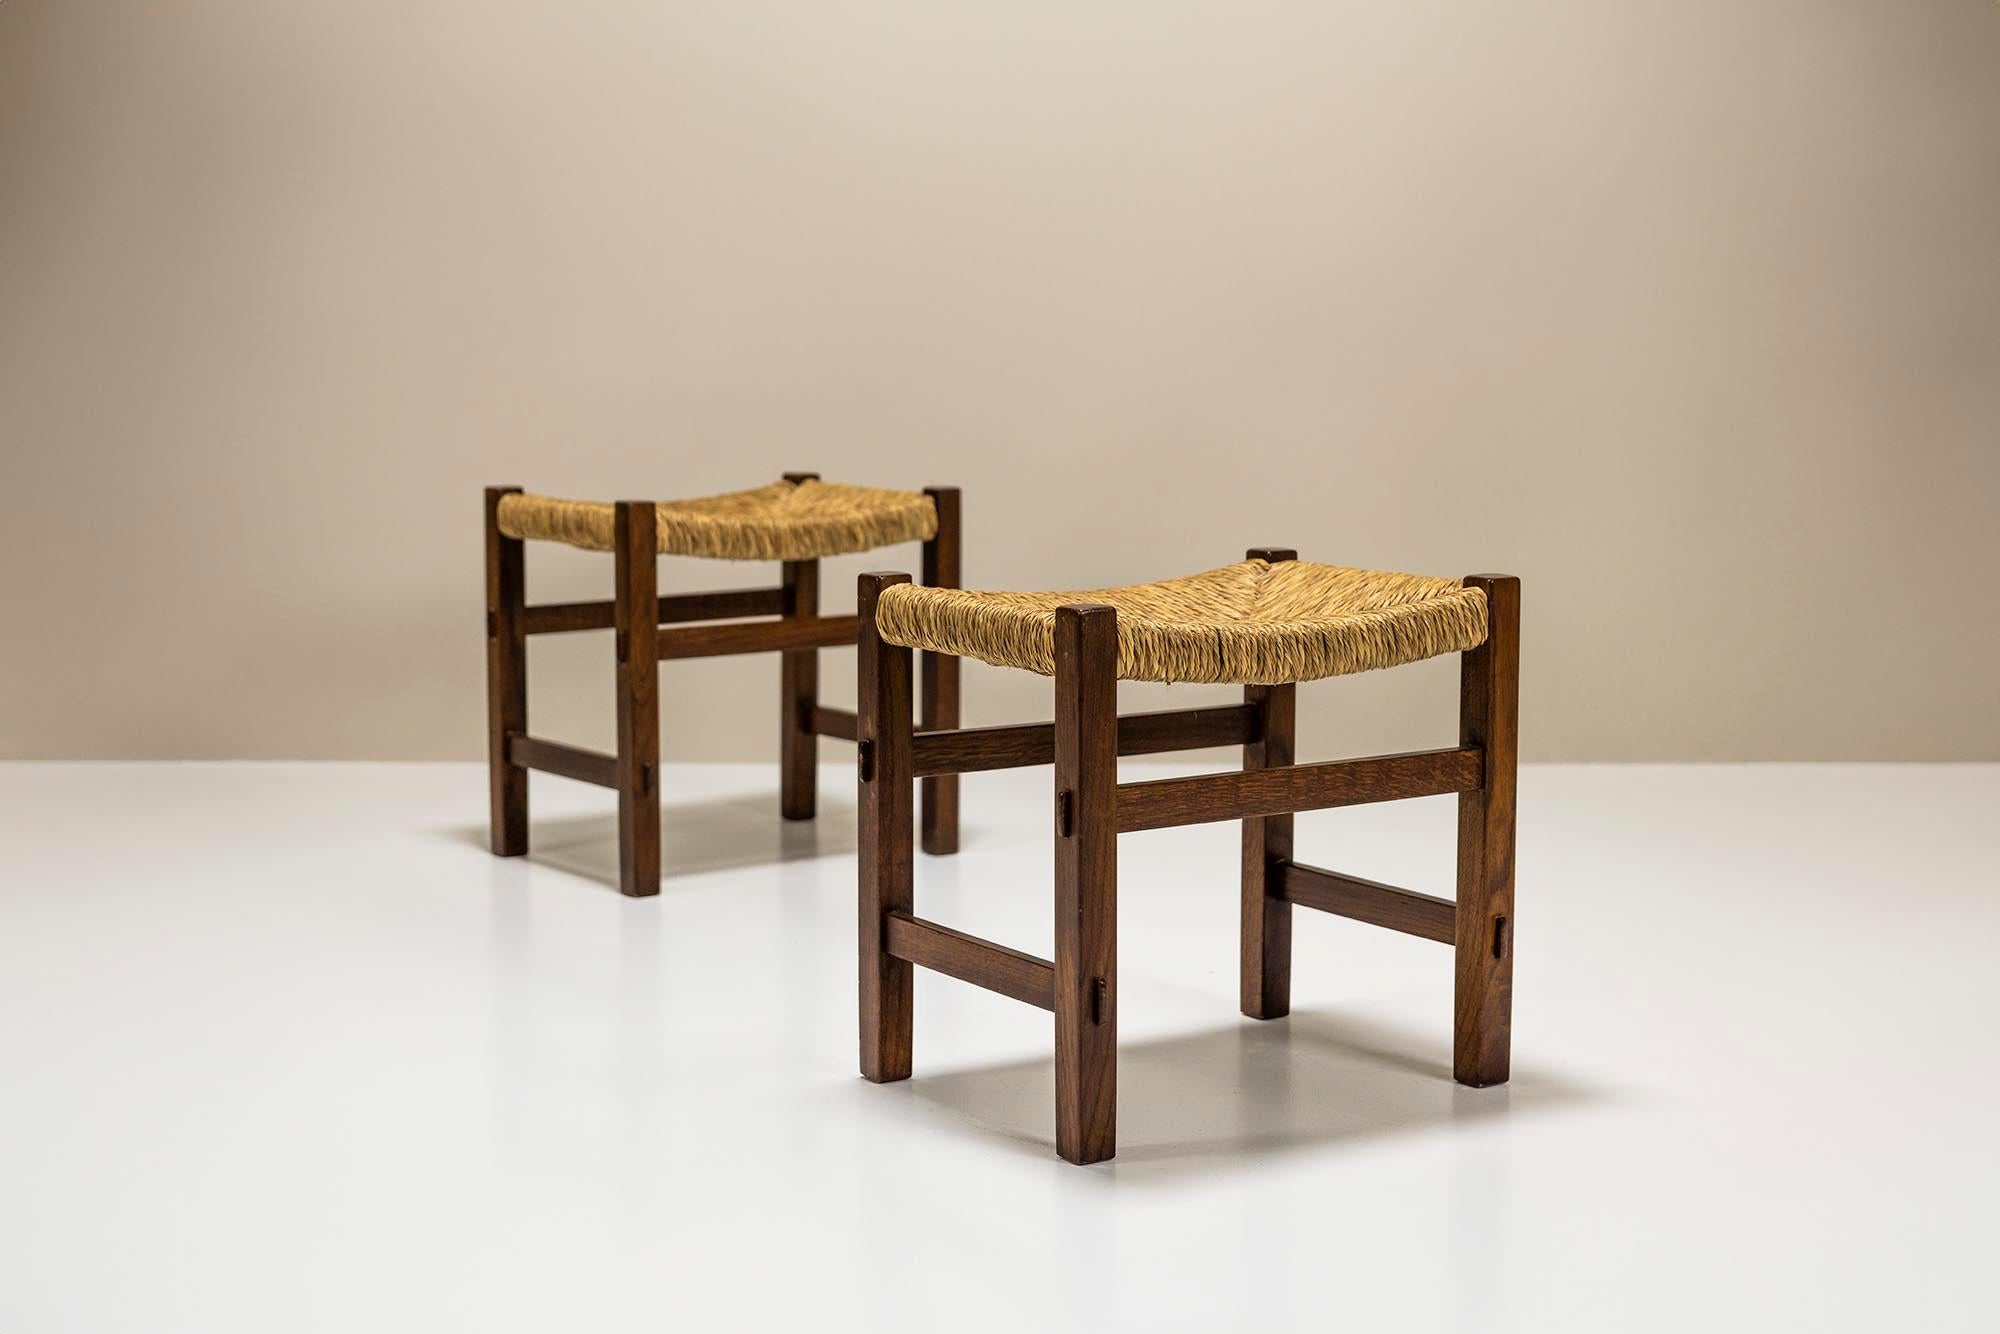 Outre les meubles impressionnants et très complexes issus de l'œuvre du fabricant de meubles italien Giuseppe Rivadossi, il a également une gamme d'œuvres plus traditionnelles à son actif. Y compris ces deux tabourets classiques de style